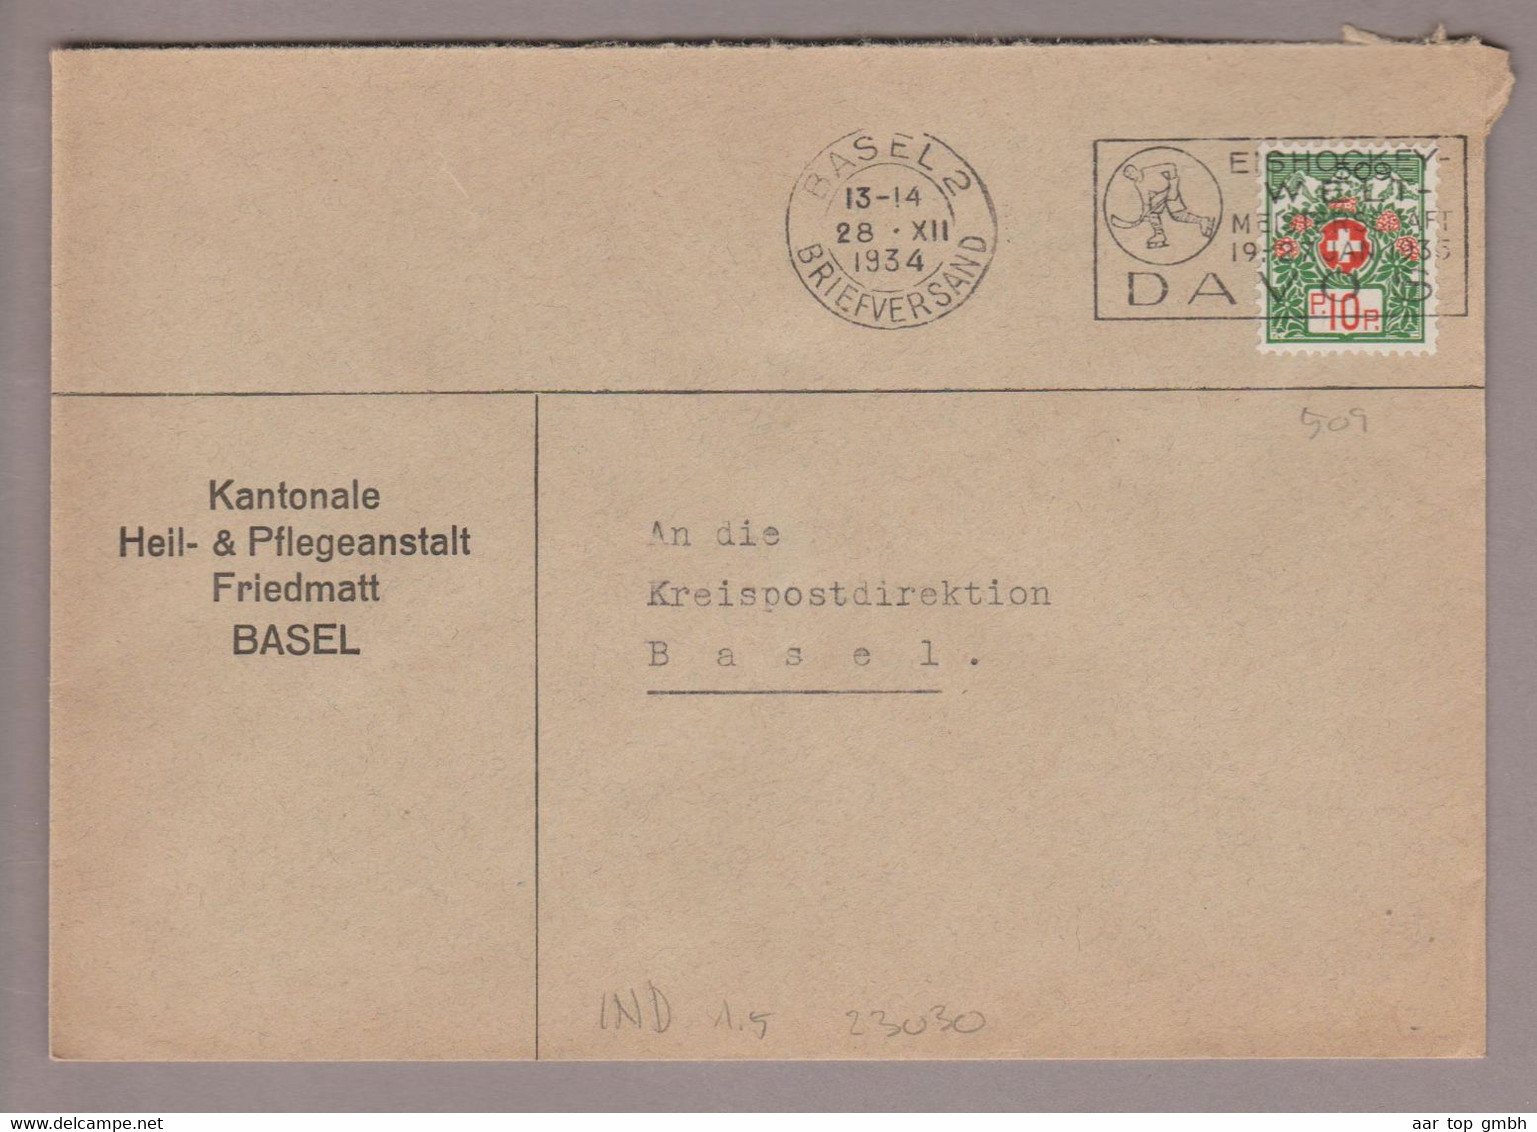 CH Portofreiheit Zu#9 10Rp. GR#509 Brief 1934-12-28 Basel Heil&Pflegeanstalt Friedmatt - Vrijstelling Van Portkosten